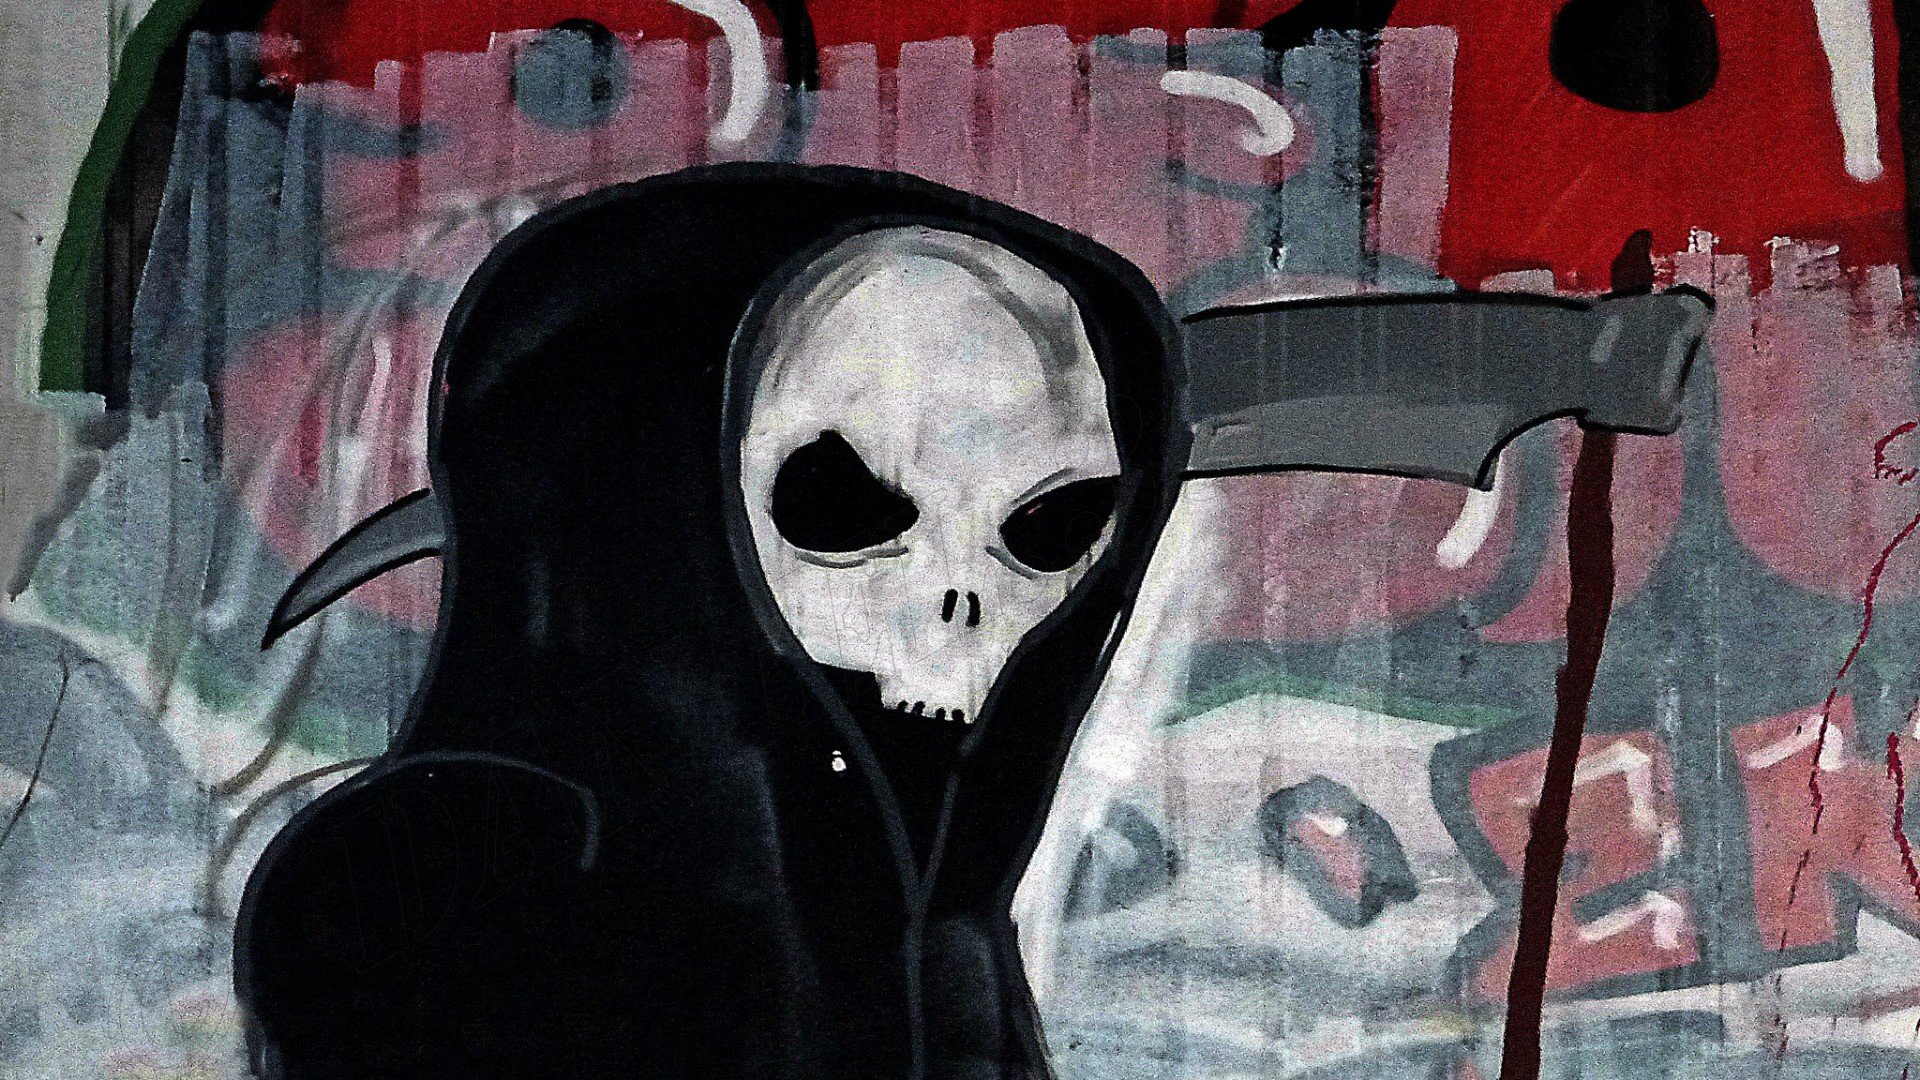 Grim Reaper, Artwork, Skull, Graffiti HD Wallpapers / Desktop and